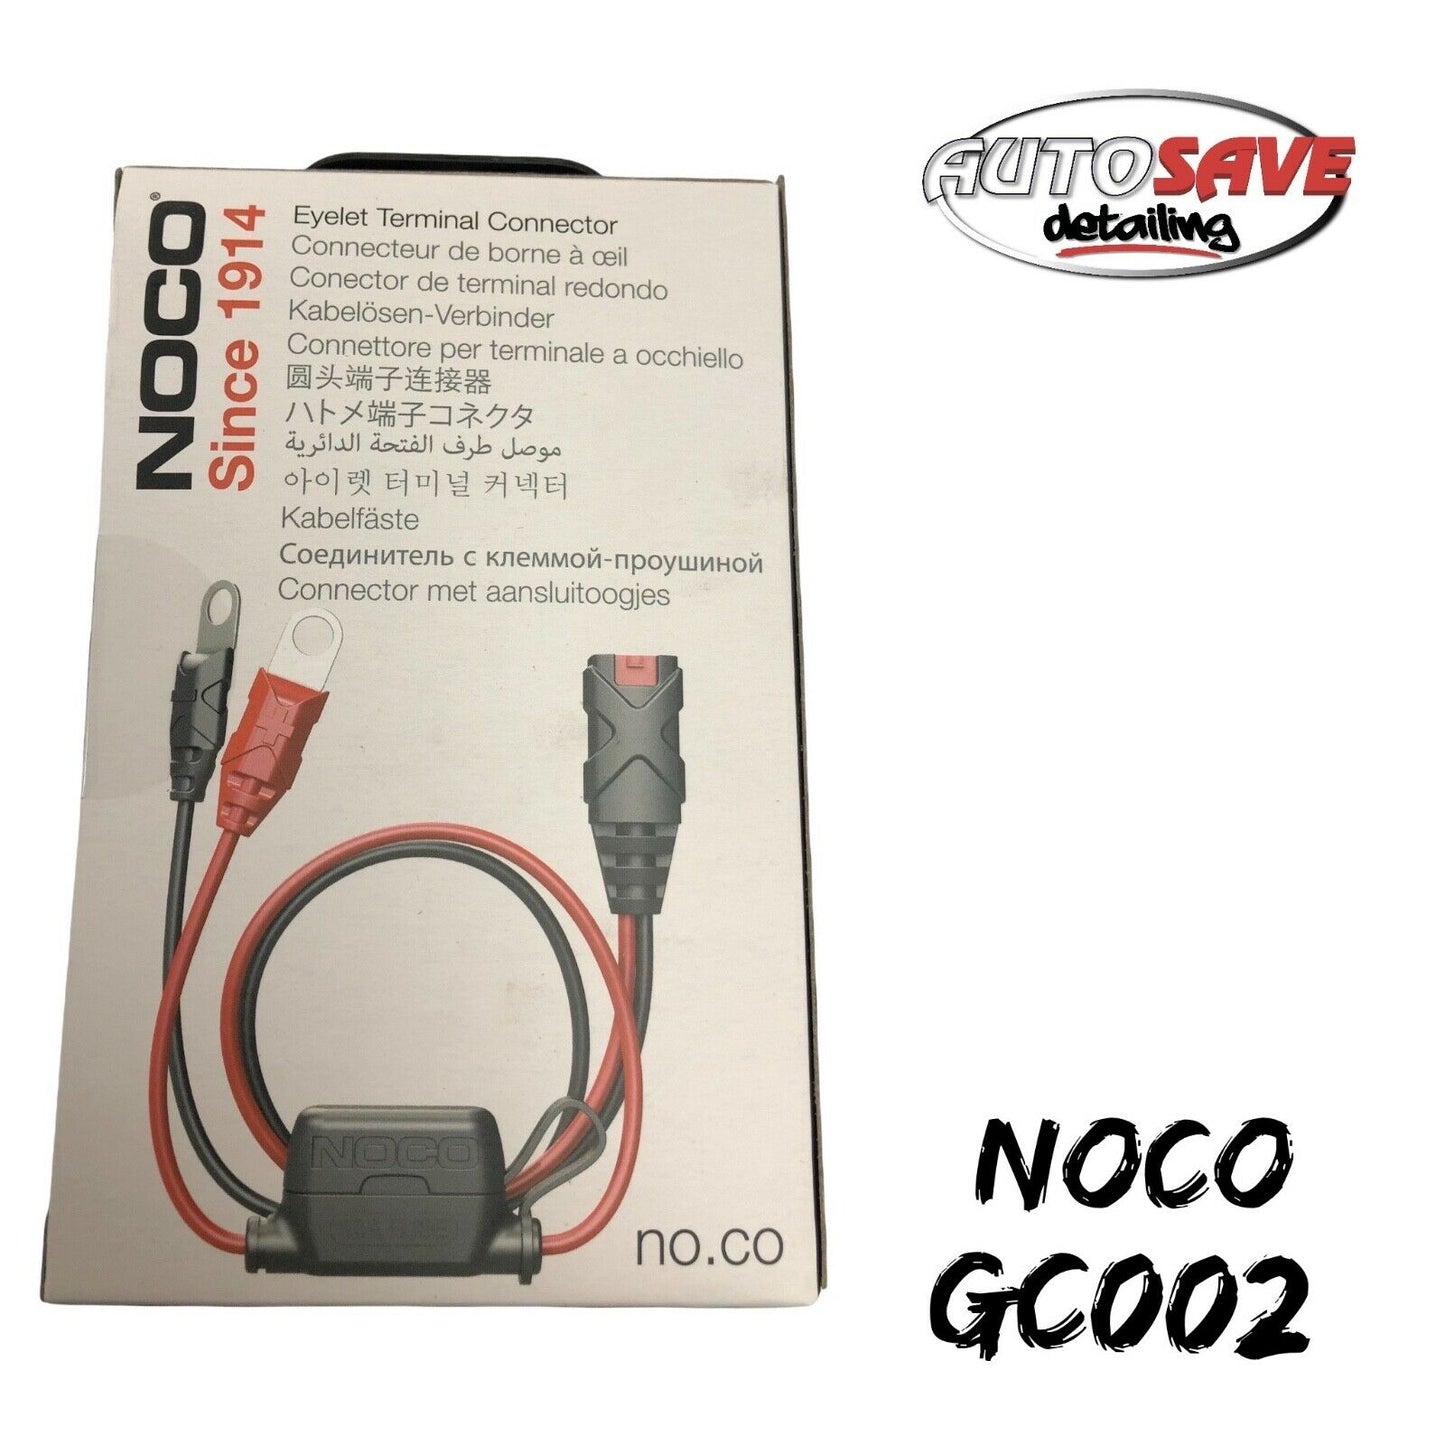 NOCO GC002 Eyelet Terminal Connector